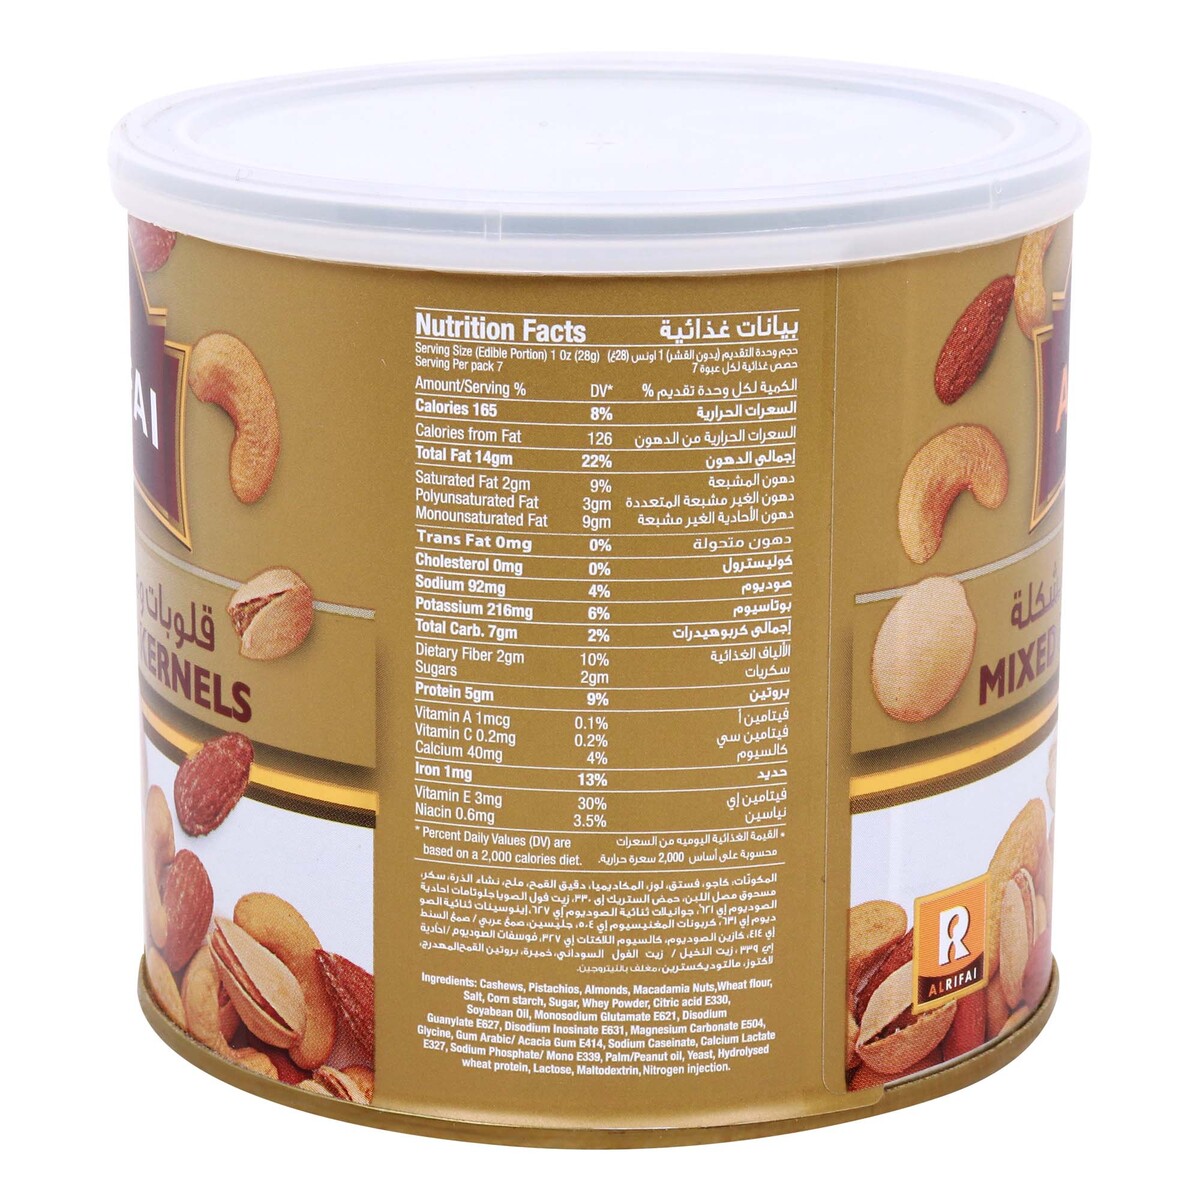 Al Rifai Mixed Nuts & Kernels Tin, 220 g